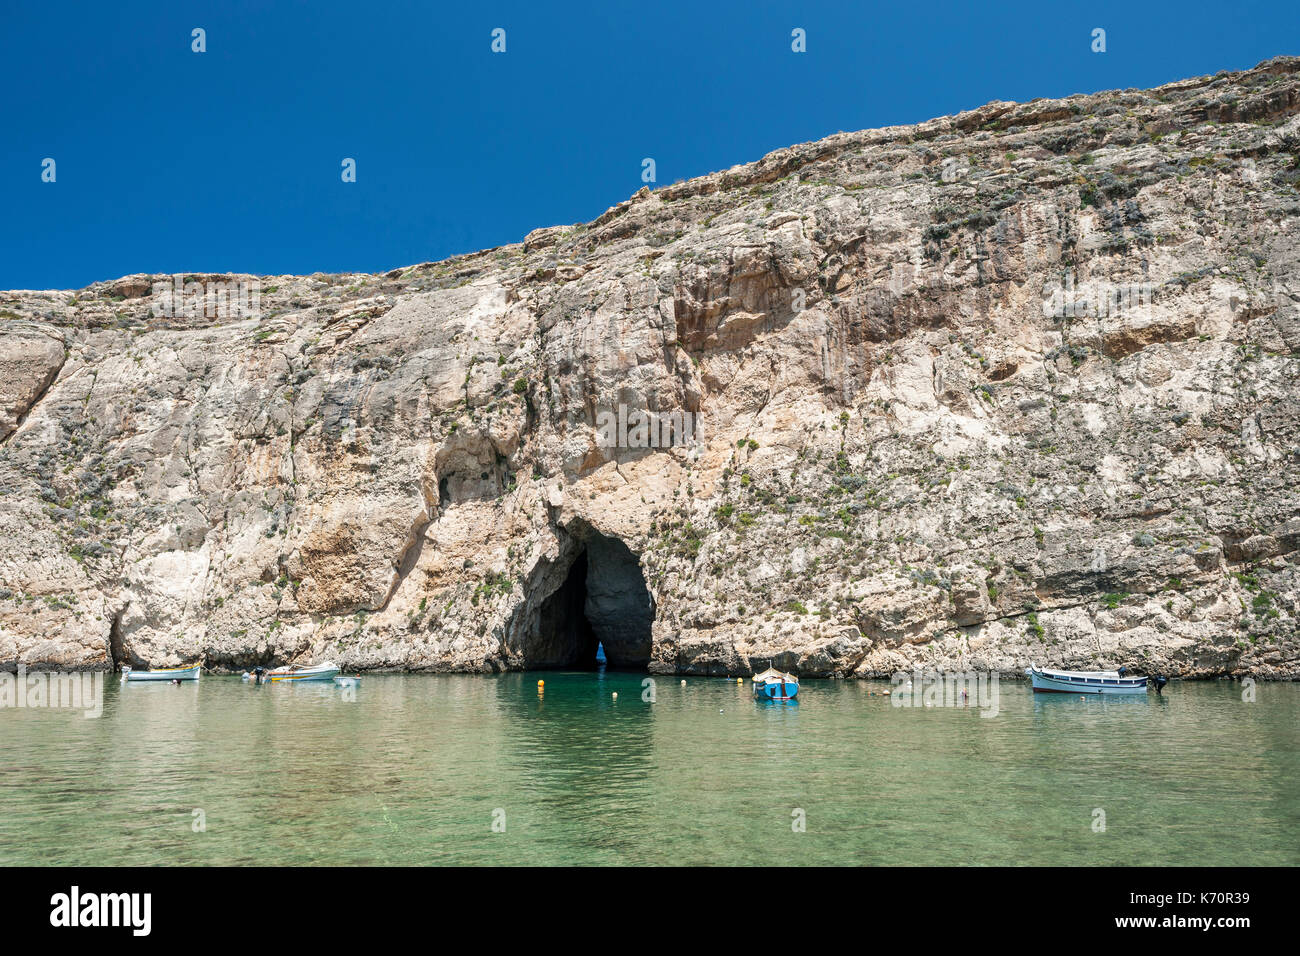 La mer intérieure (aka Qawra) sur l'île de Gozo à Malte. Banque D'Images